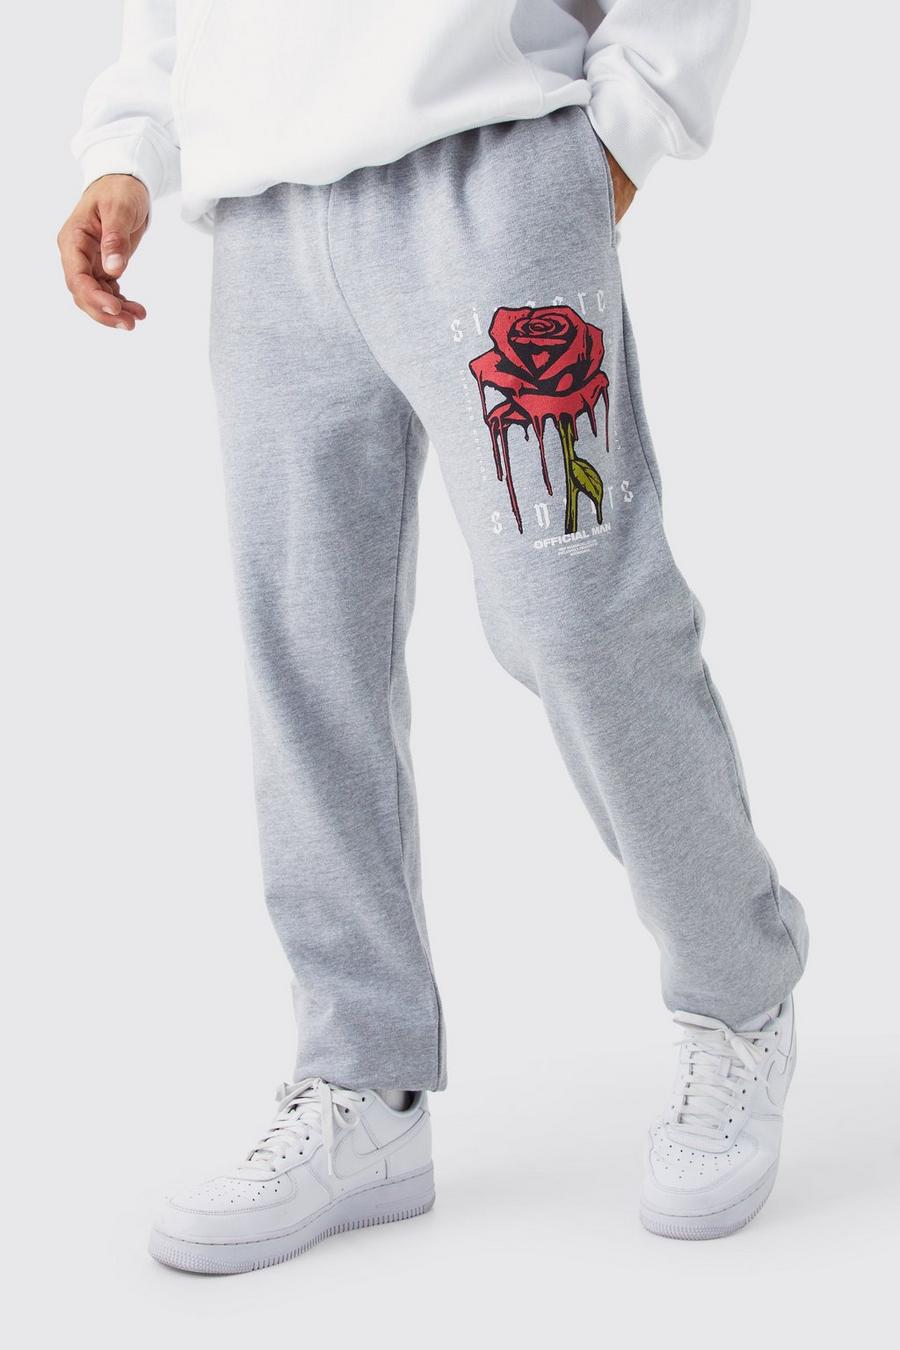 Pantaloni tuta con grafica di rose e gocce, Grey marl grigio